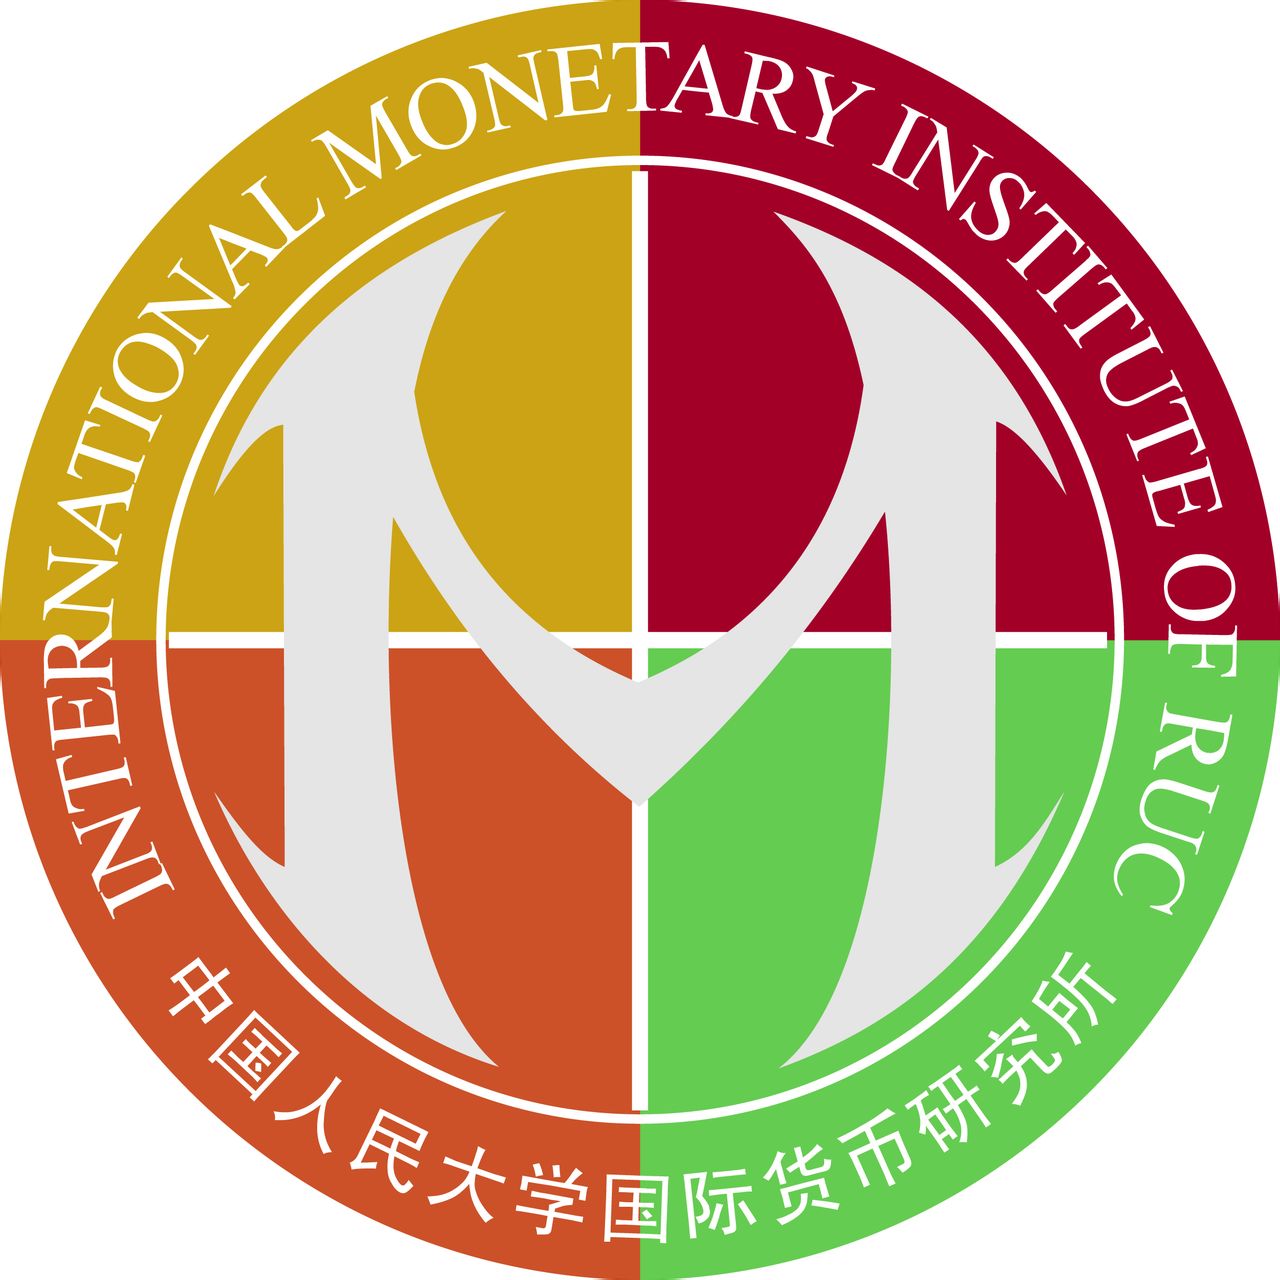 中國人民大學國際貨幣研究所